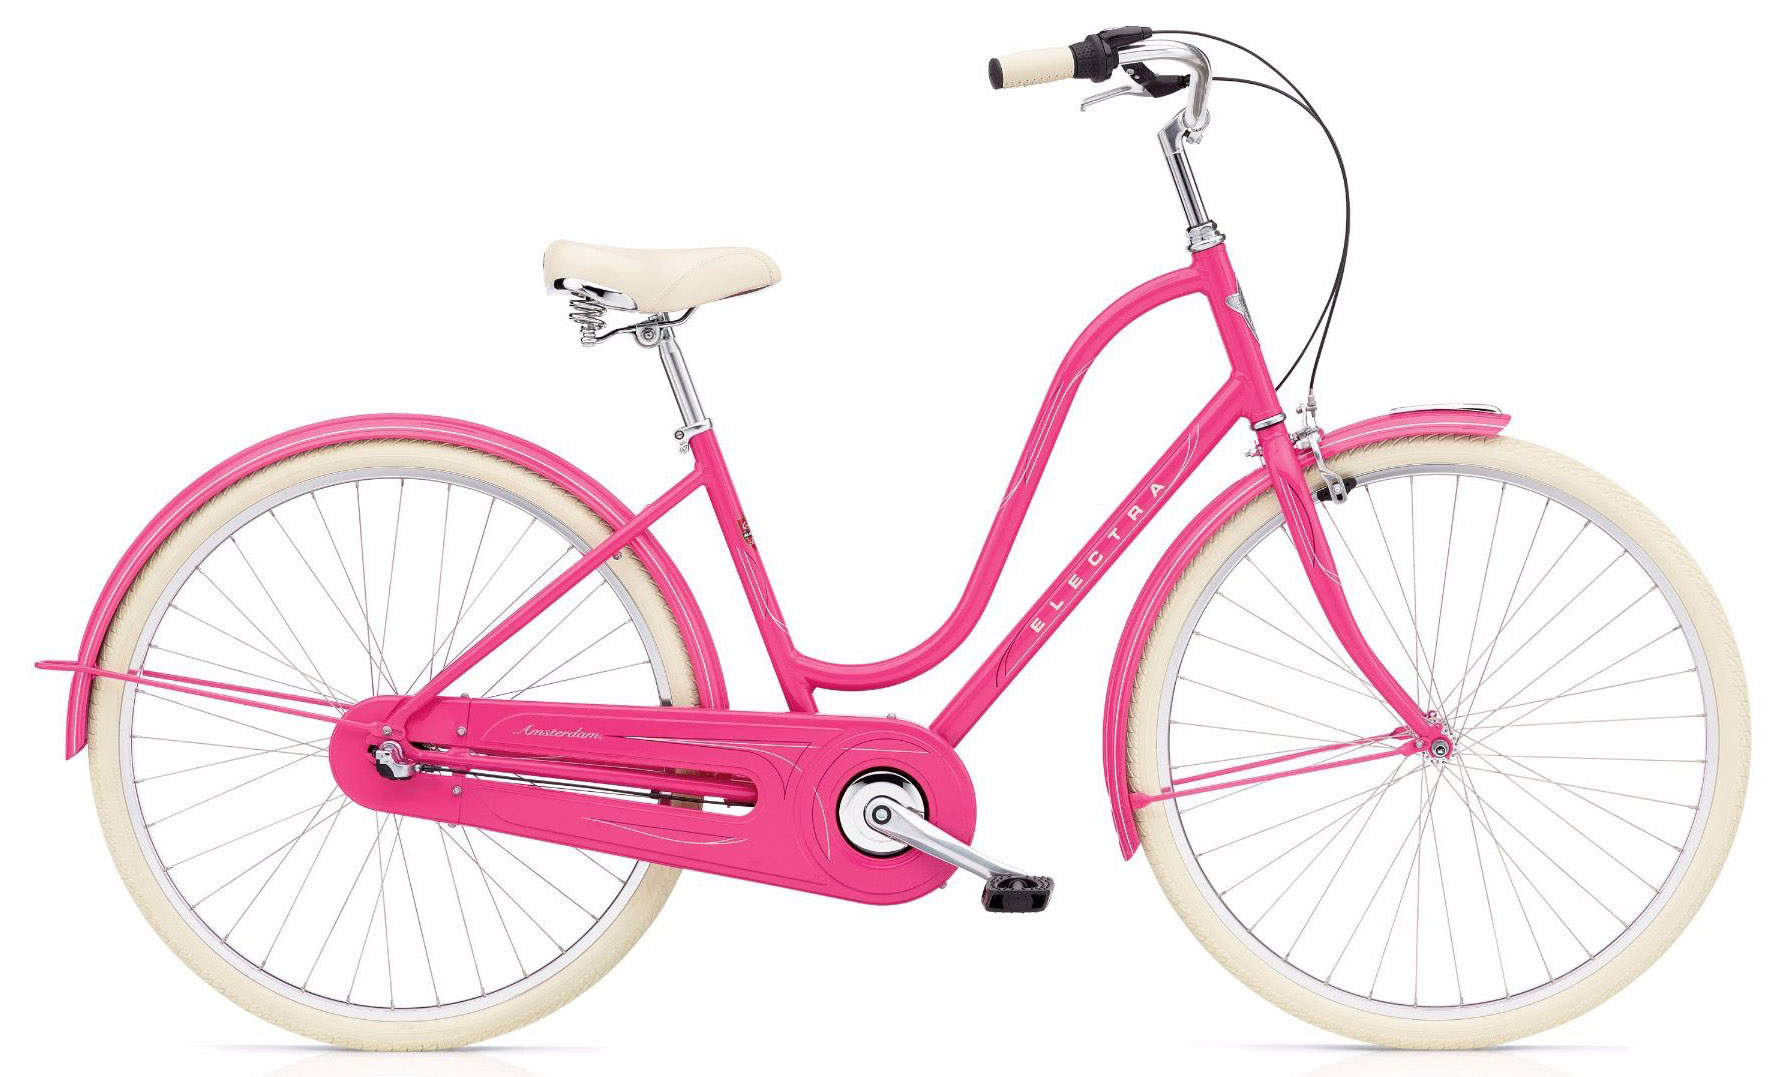  Отзывы о Женском велосипеде Electra Amsterdam Original 3i Ladies 2020